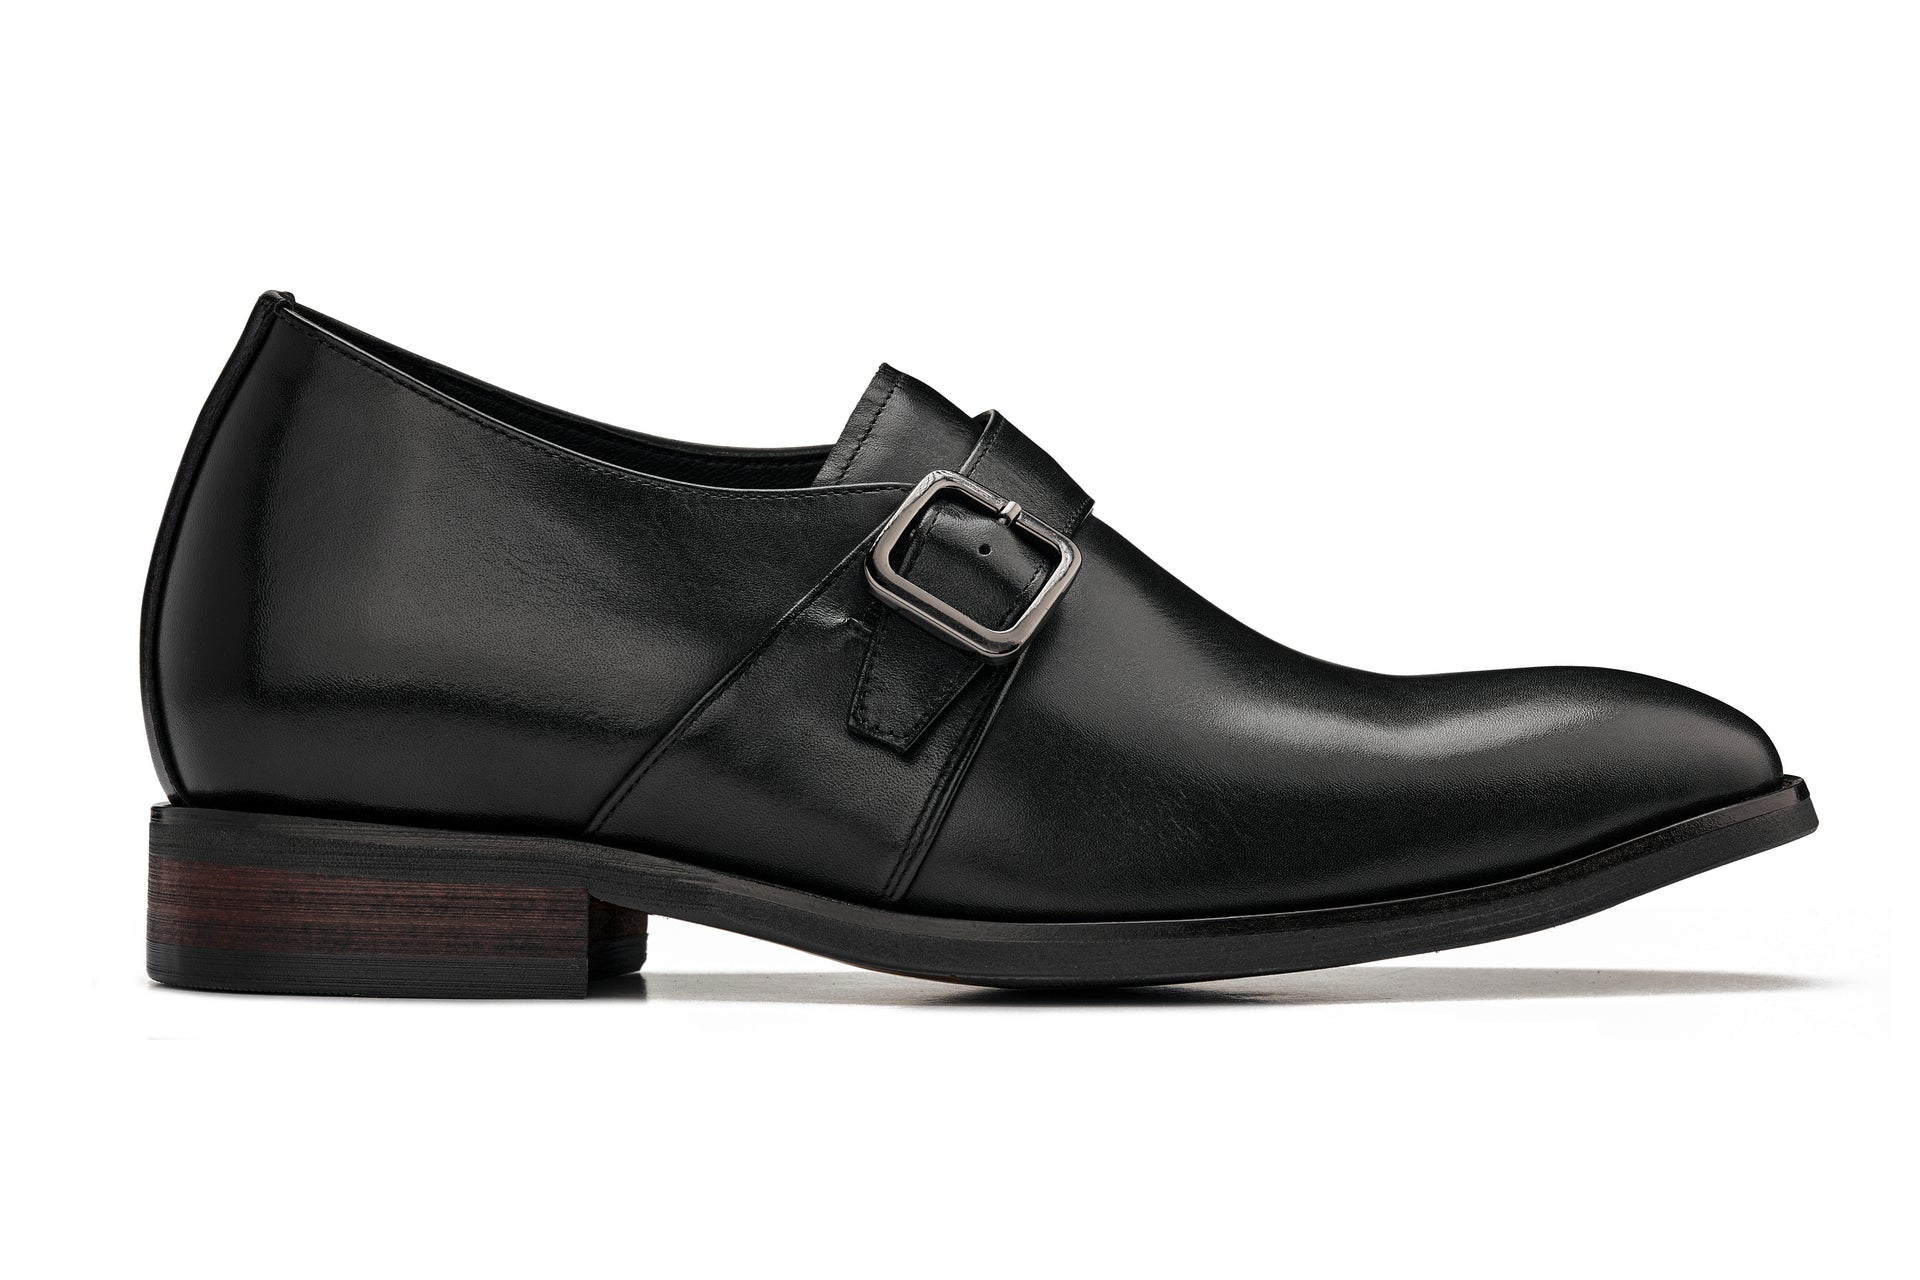 Lottusse Maison Oxfords T1650, Black Leather Mens Shoe Size USA 11, EU 45